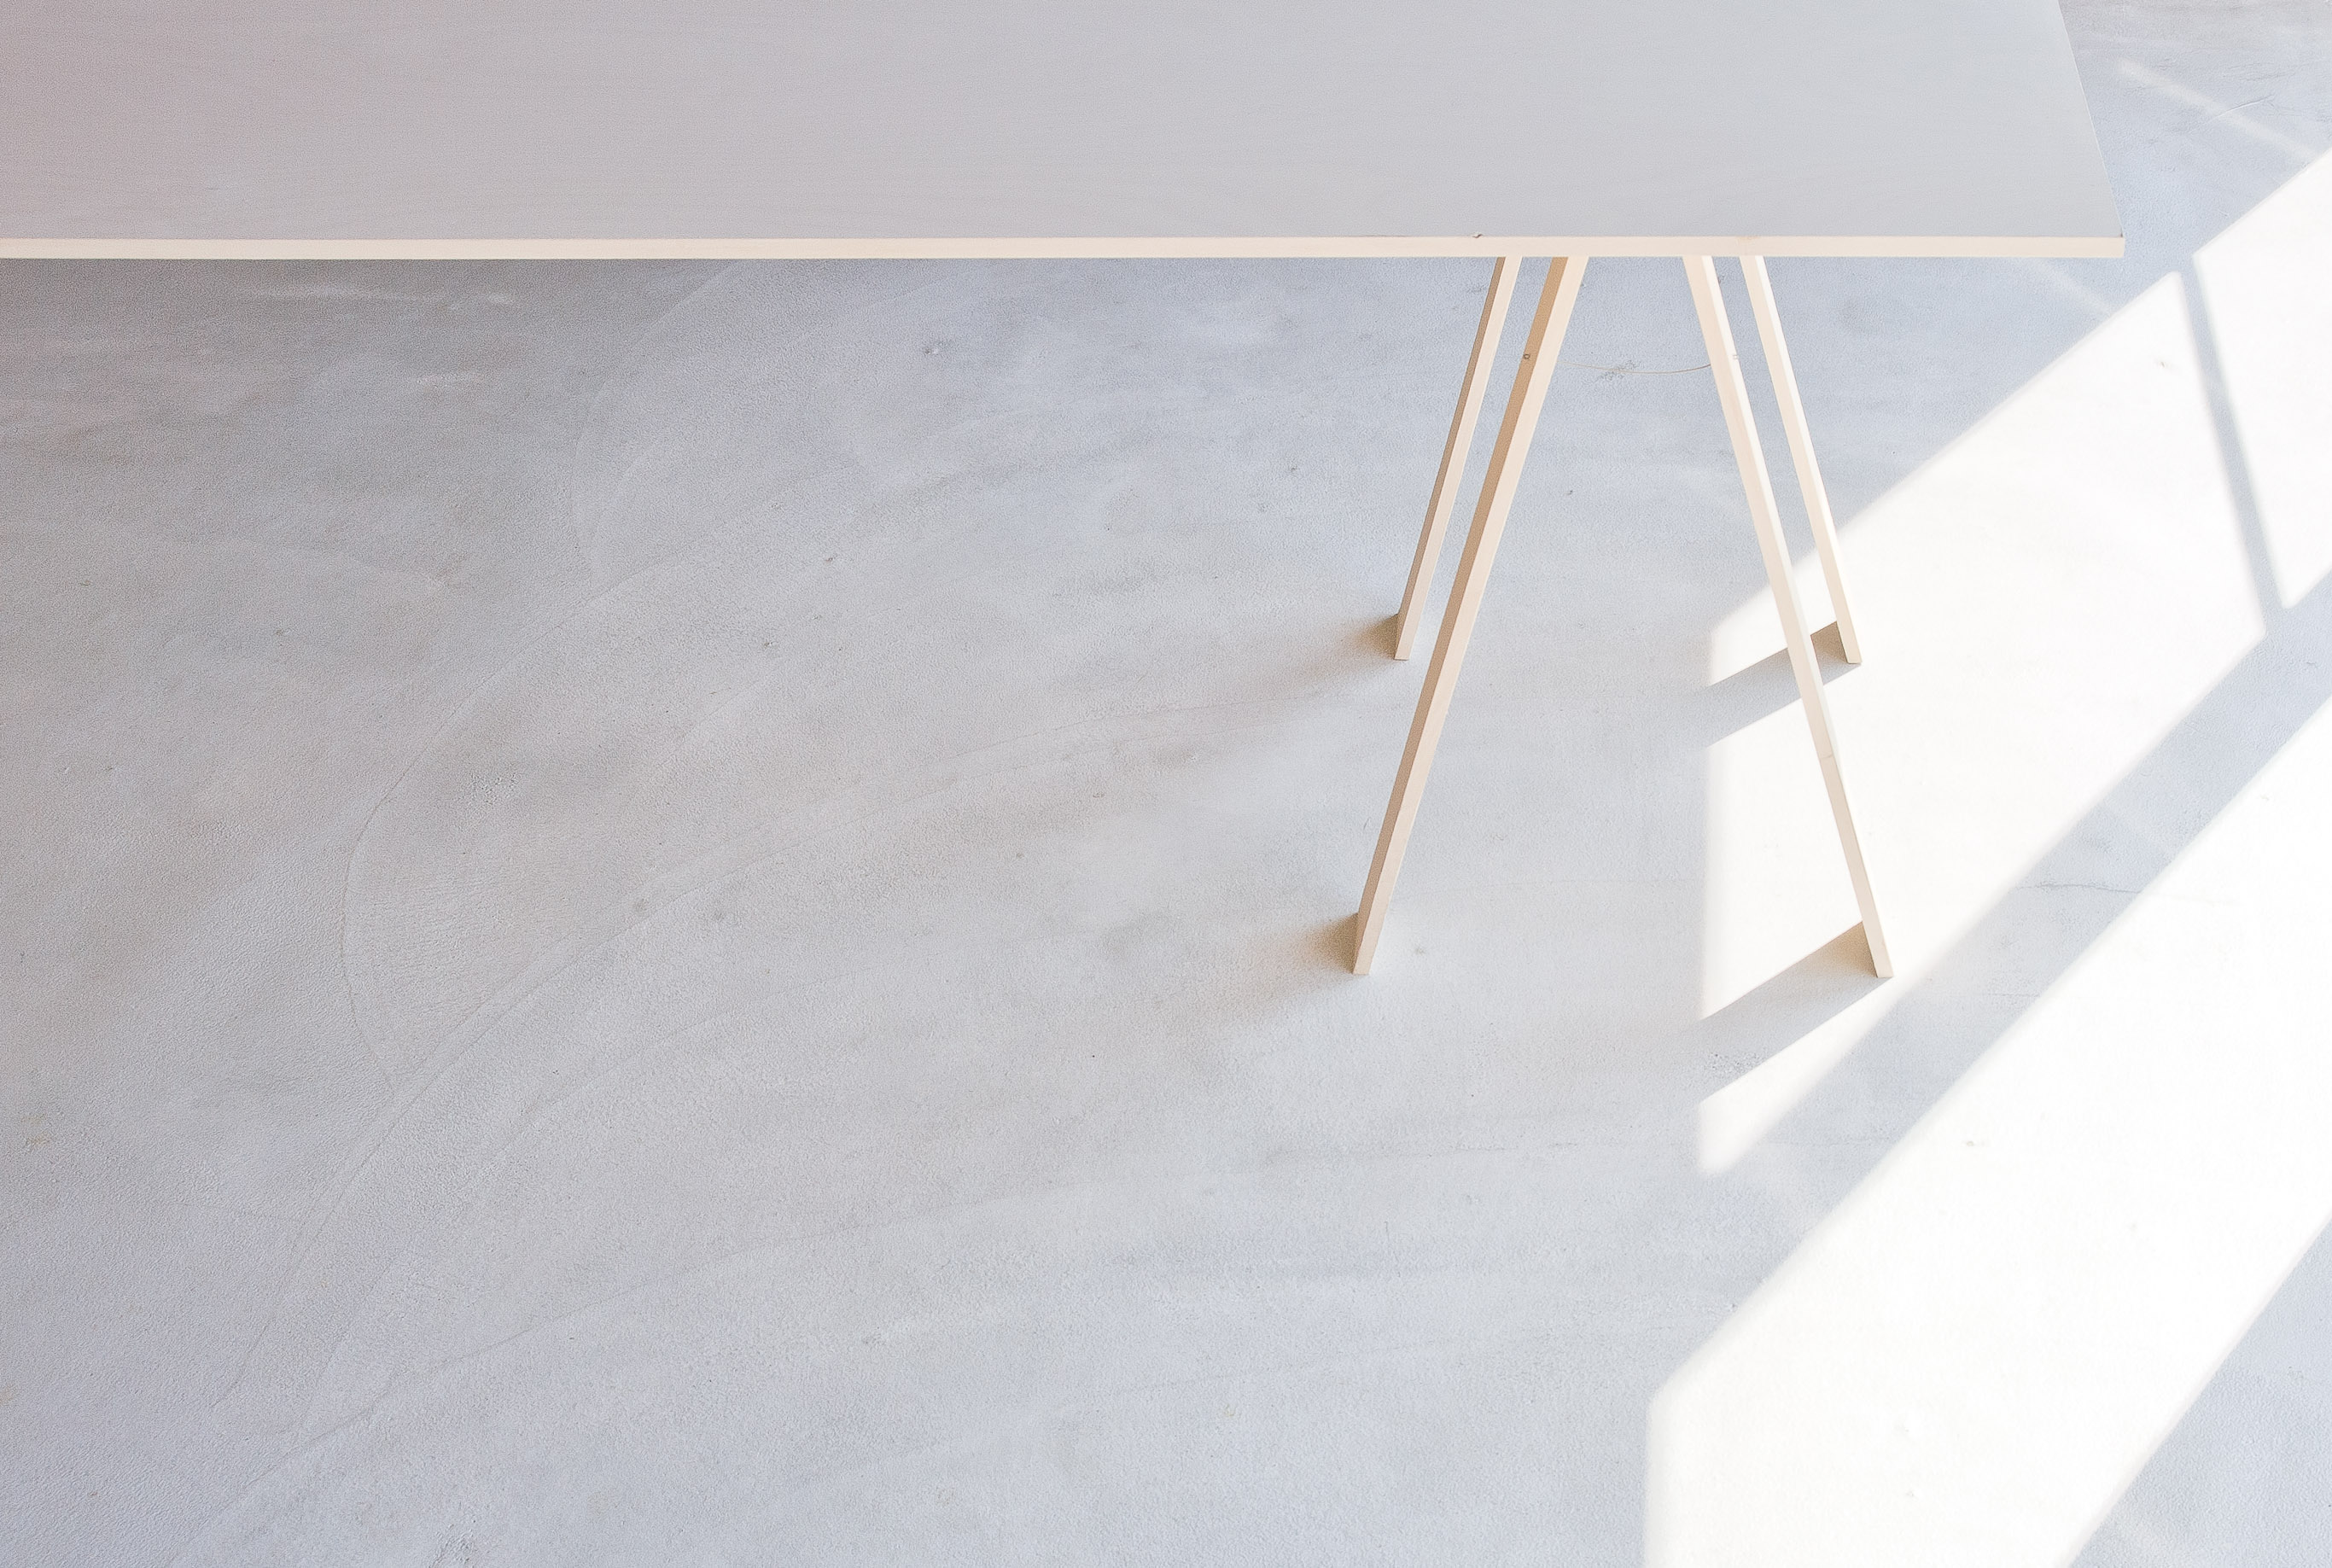 合板テーブル / Folding Table made of one plywood